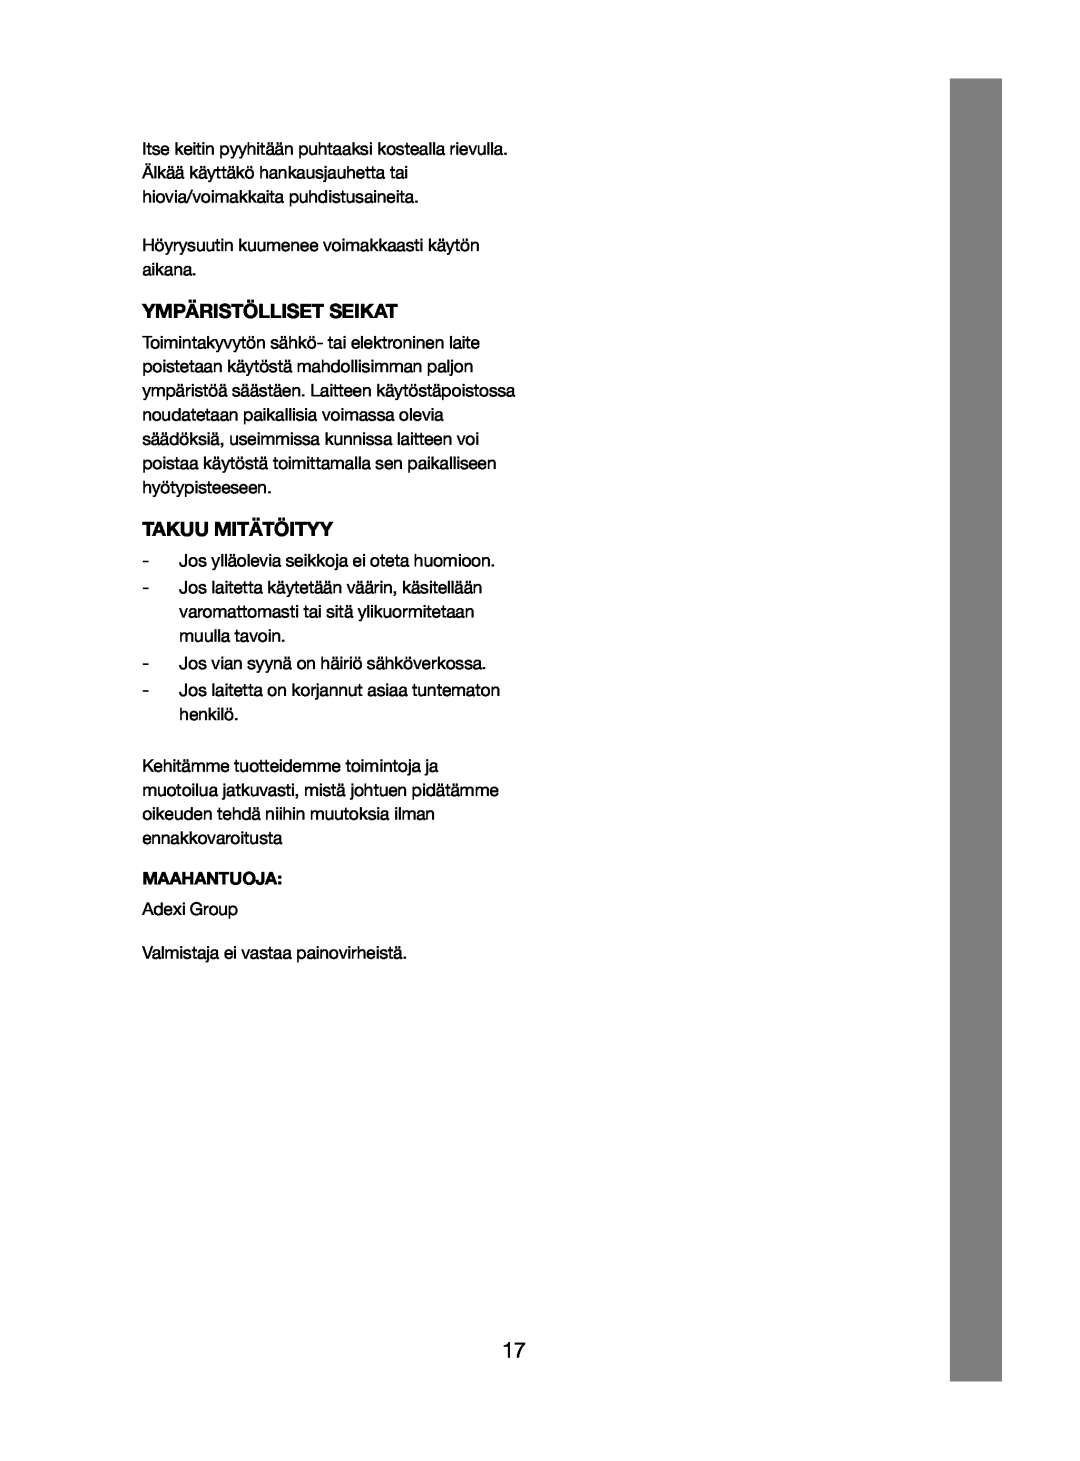 Melissa 245-032 manual Ympäristölliset Seikat, Takuu Mitätöityy, Maahantuoja 